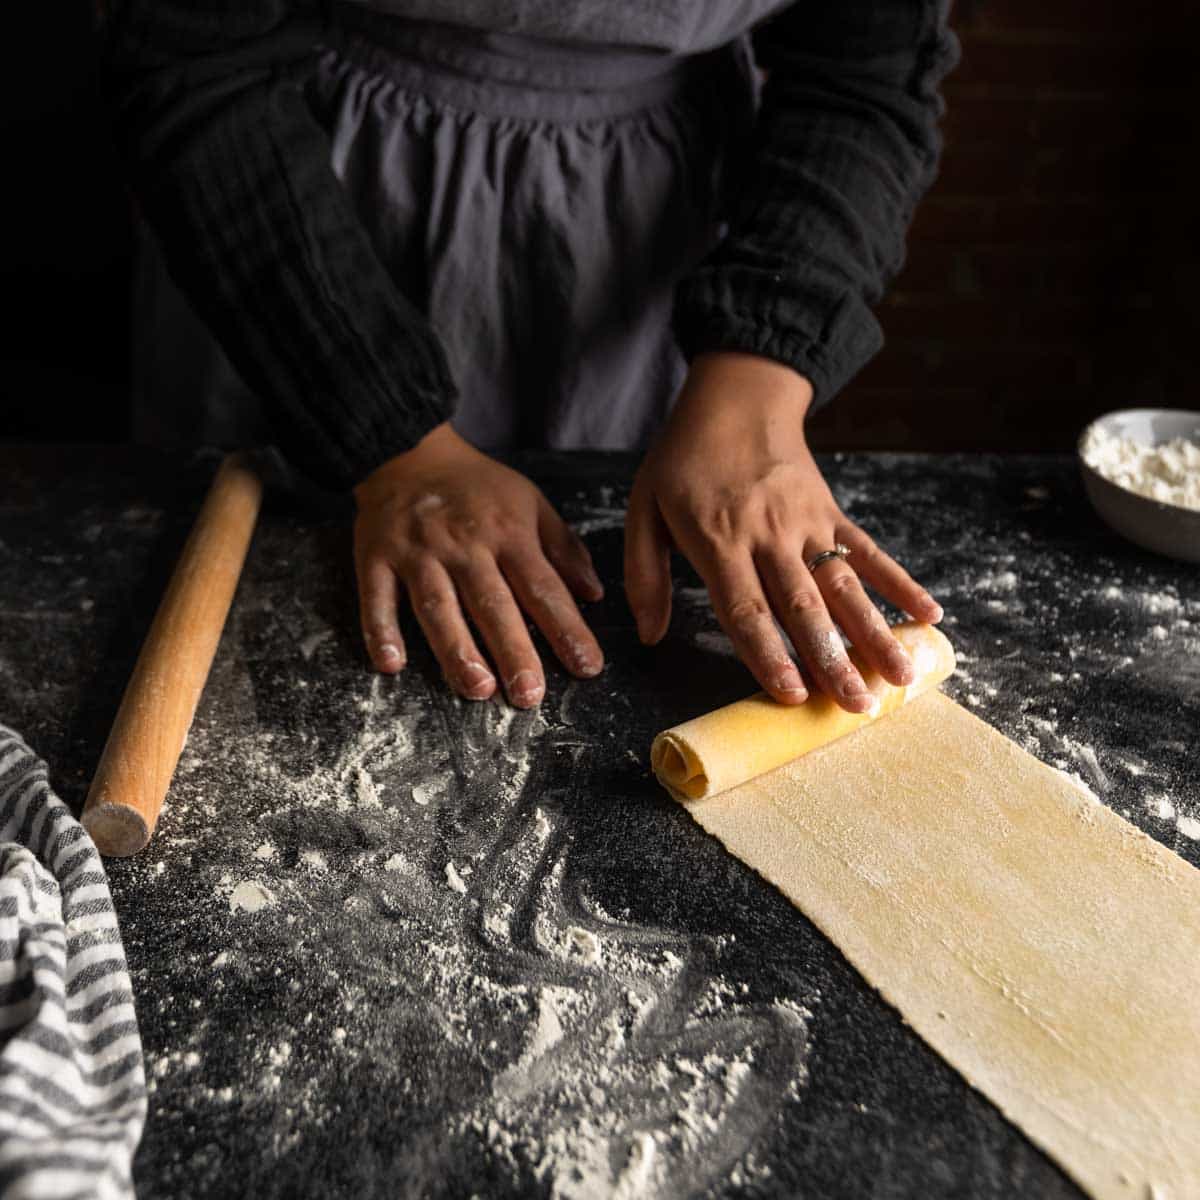 rolling a long sheet of pasta dough into a log